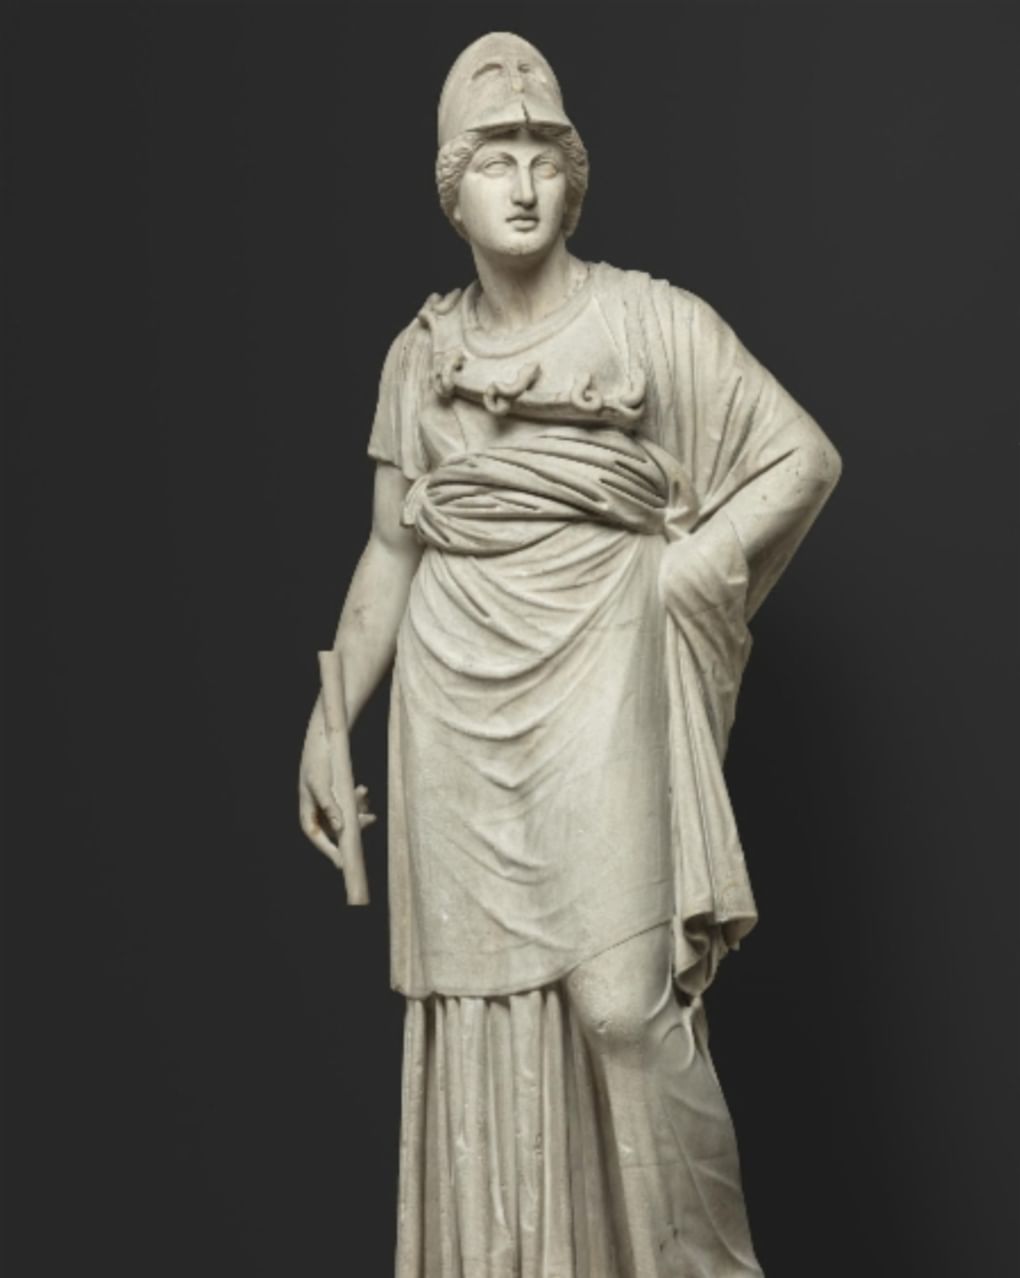 Статуя Афины. Древний Рим, II век (?). Государственный Эрмитаж, Санкт-Петербург